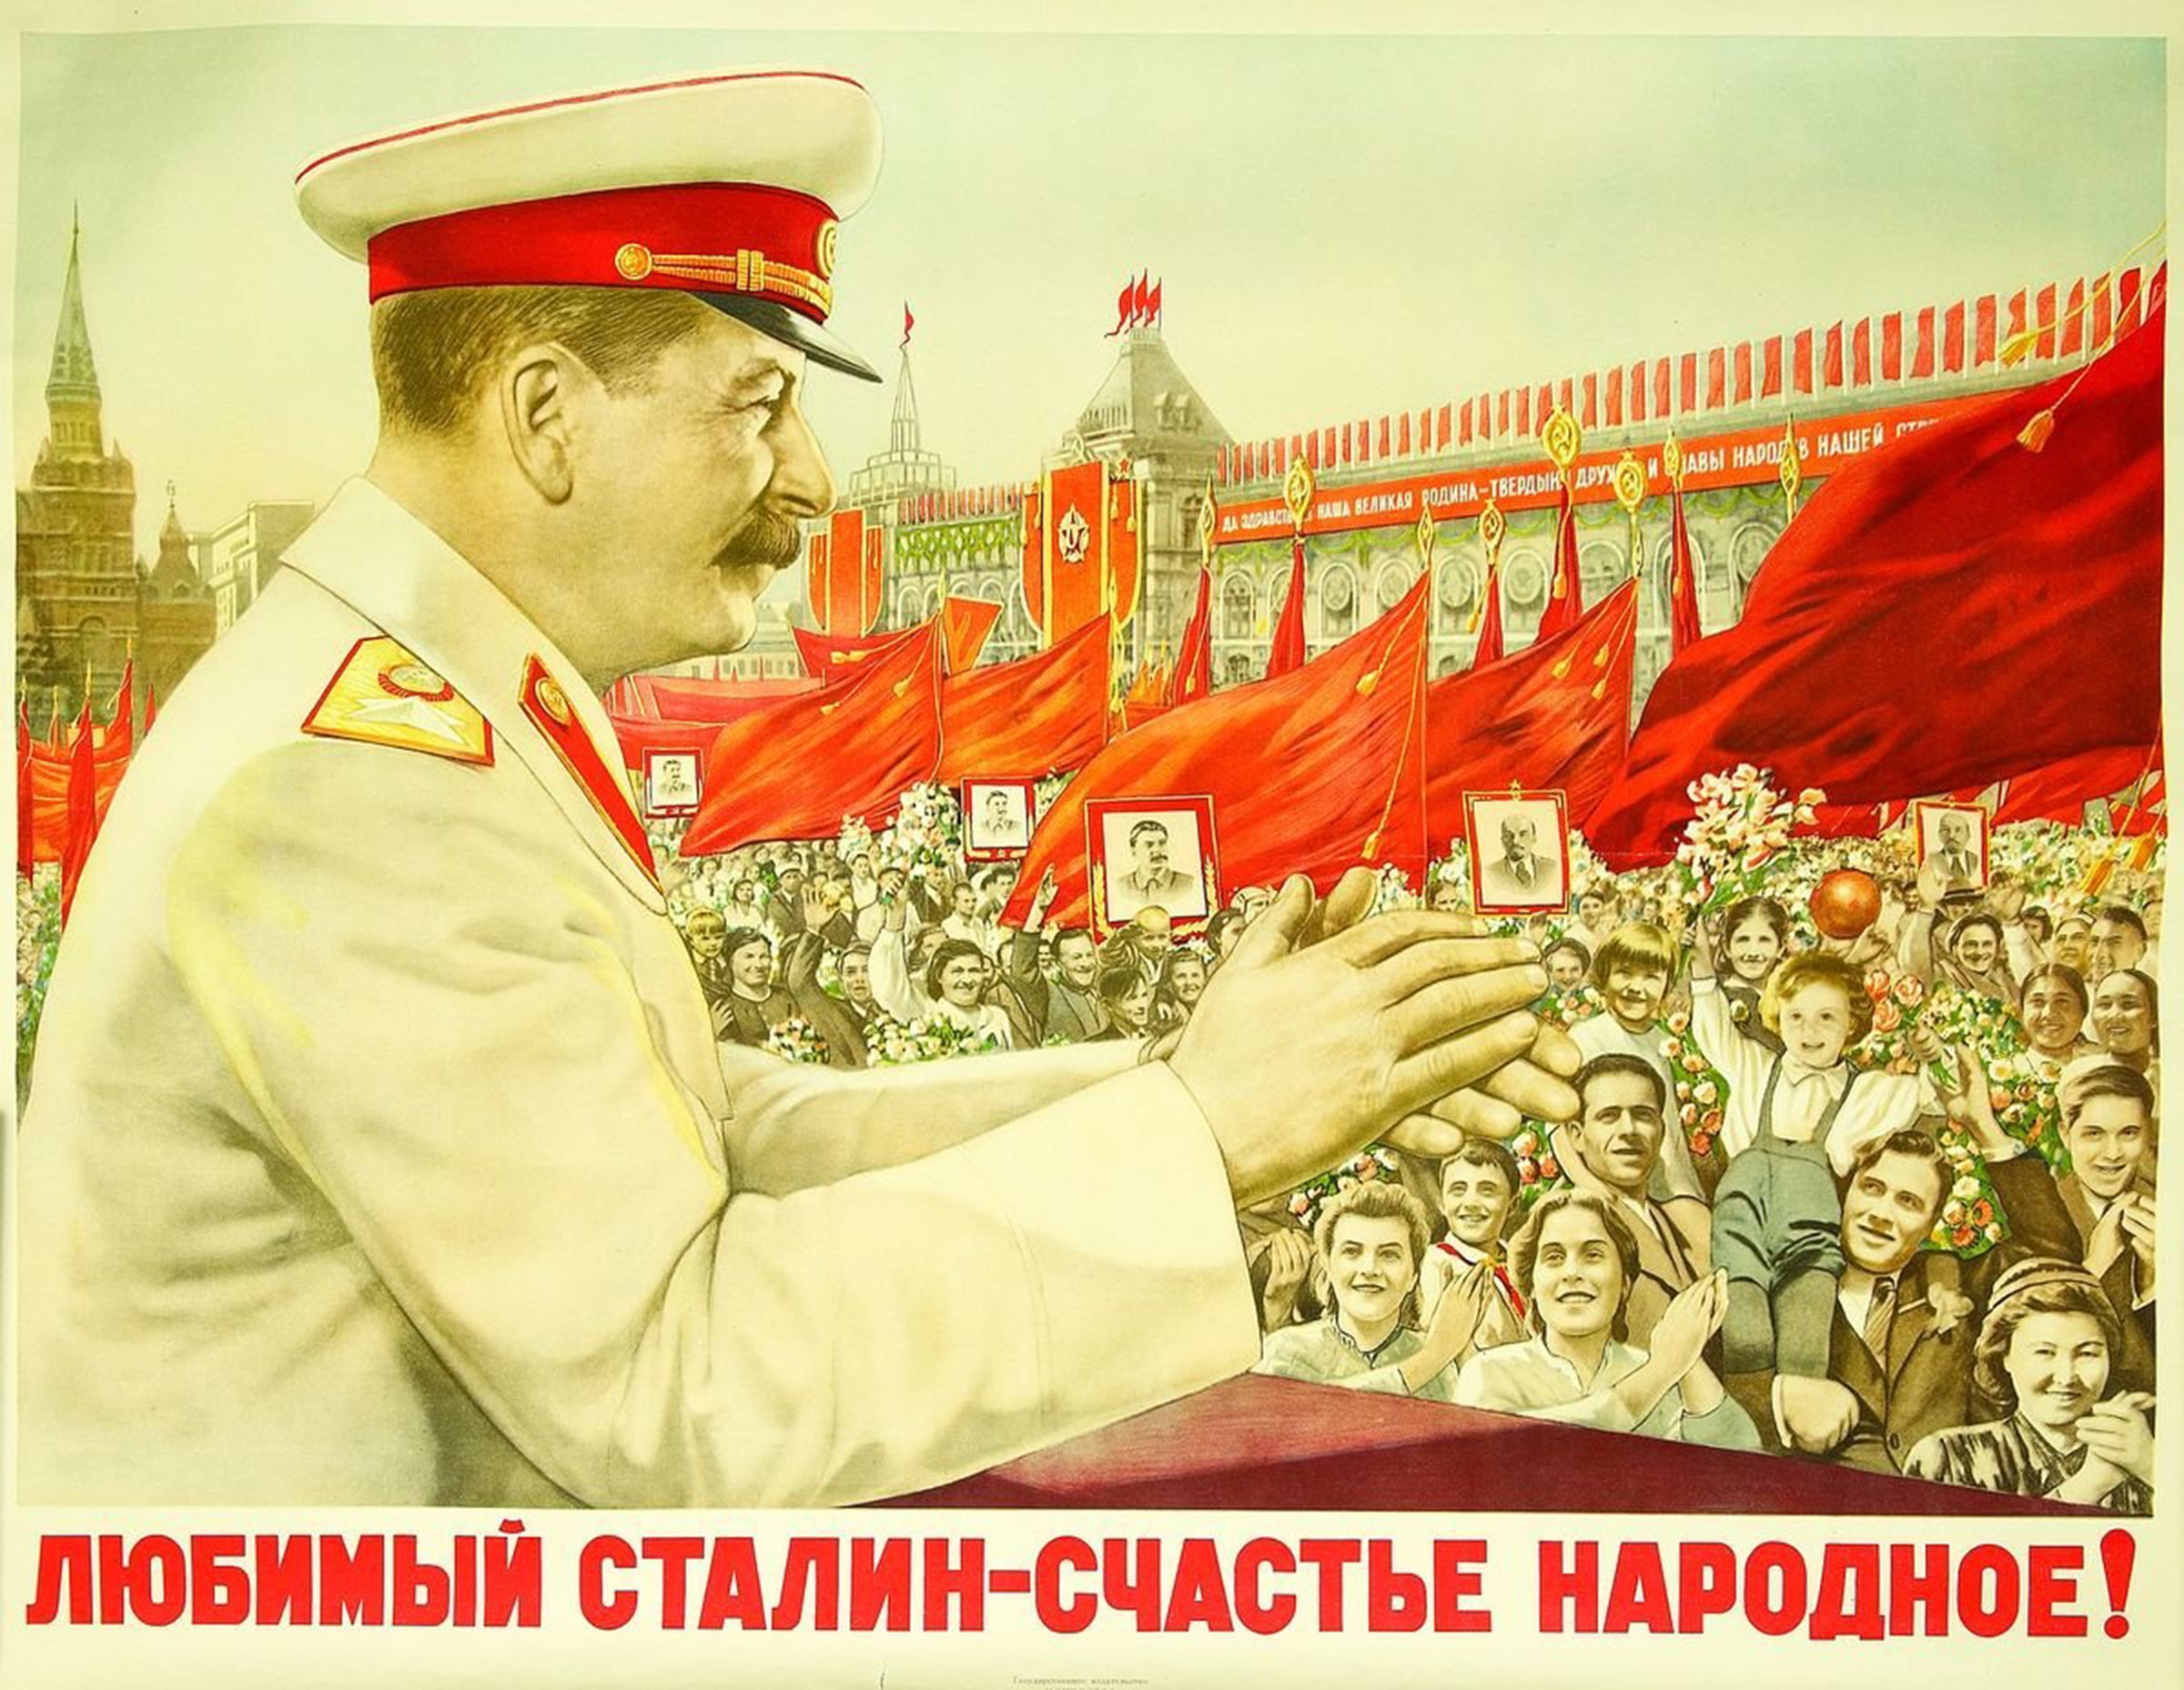 Народные лозунги. Плакат Сталин Светоч коммунизма. Культ личности Сталина плакаты. Любимый Сталин счастье народное плакат. Культ личности Сталина Платакы.